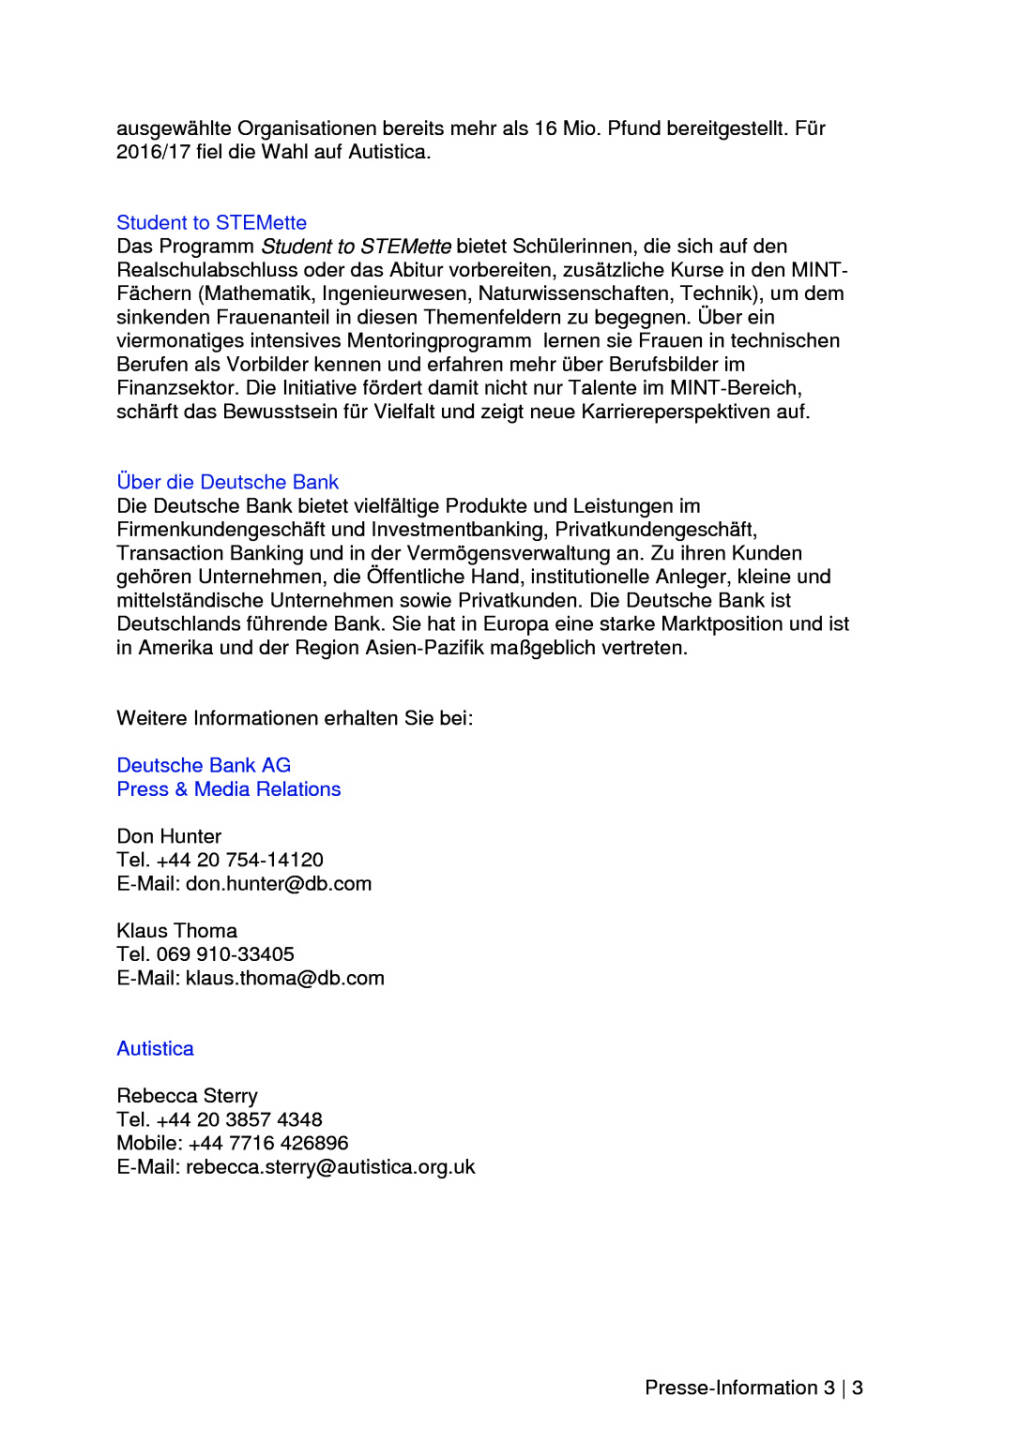 Deutsche Bank mit 24-Stunden-Hackathon-App für Menschen mit Autismus, Seite 3/3, komplettes Dokument unter http://boerse-social.com/static/uploads/file_1978_deutsche_bank_mit_24-stunden-hackathon-app_fur_menschen_mit_autismus.pdf